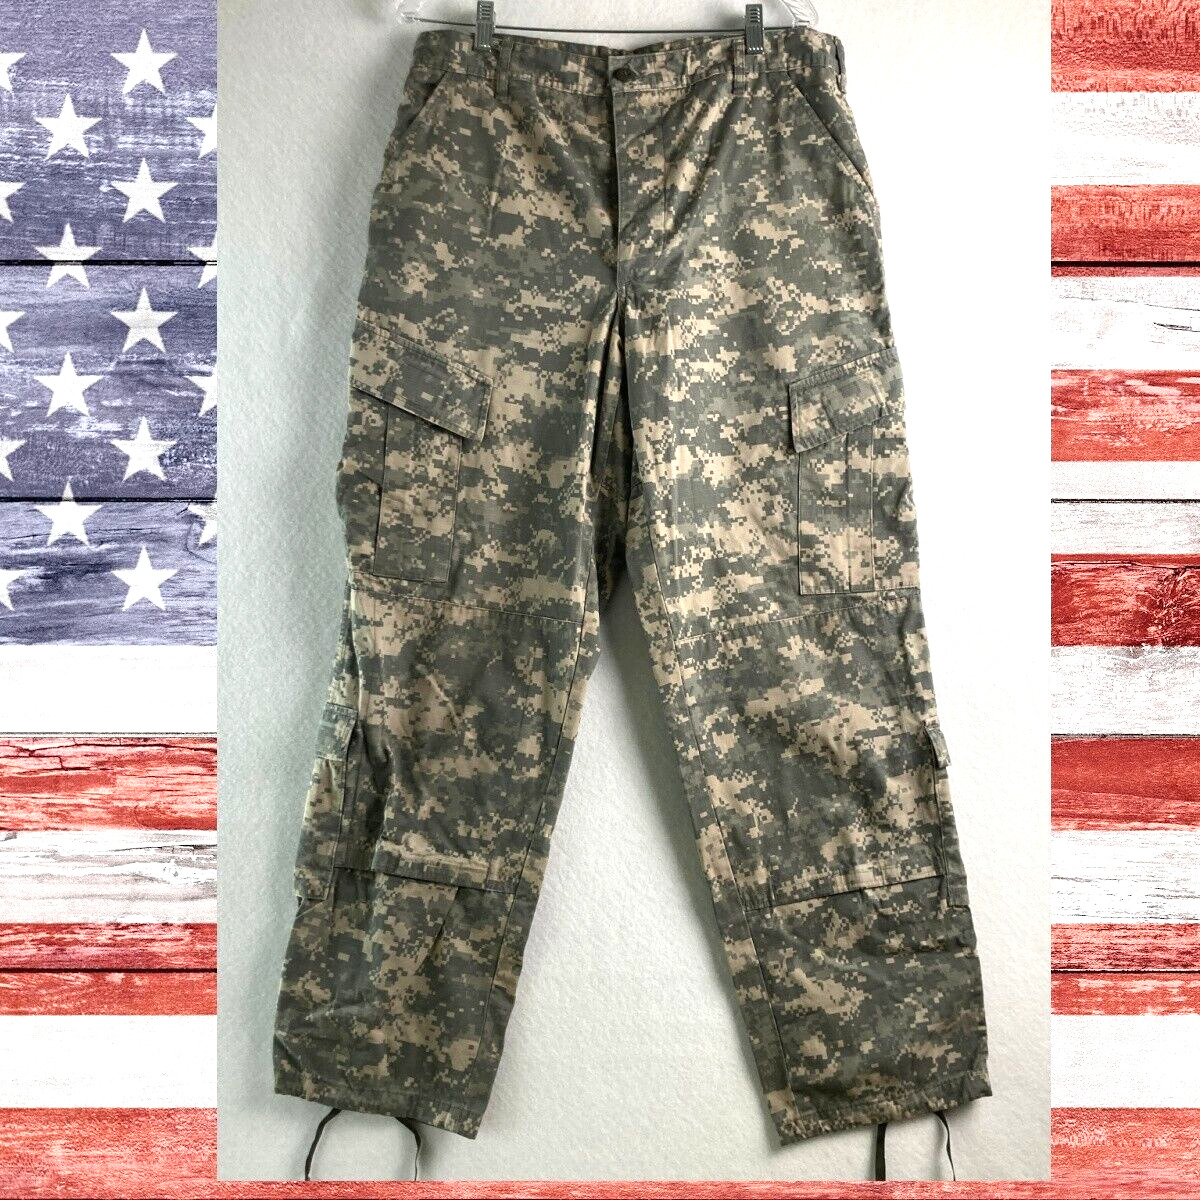 Medium Regular Army Combat Pants ACU Digital Camo Uniform Tactical Pockets